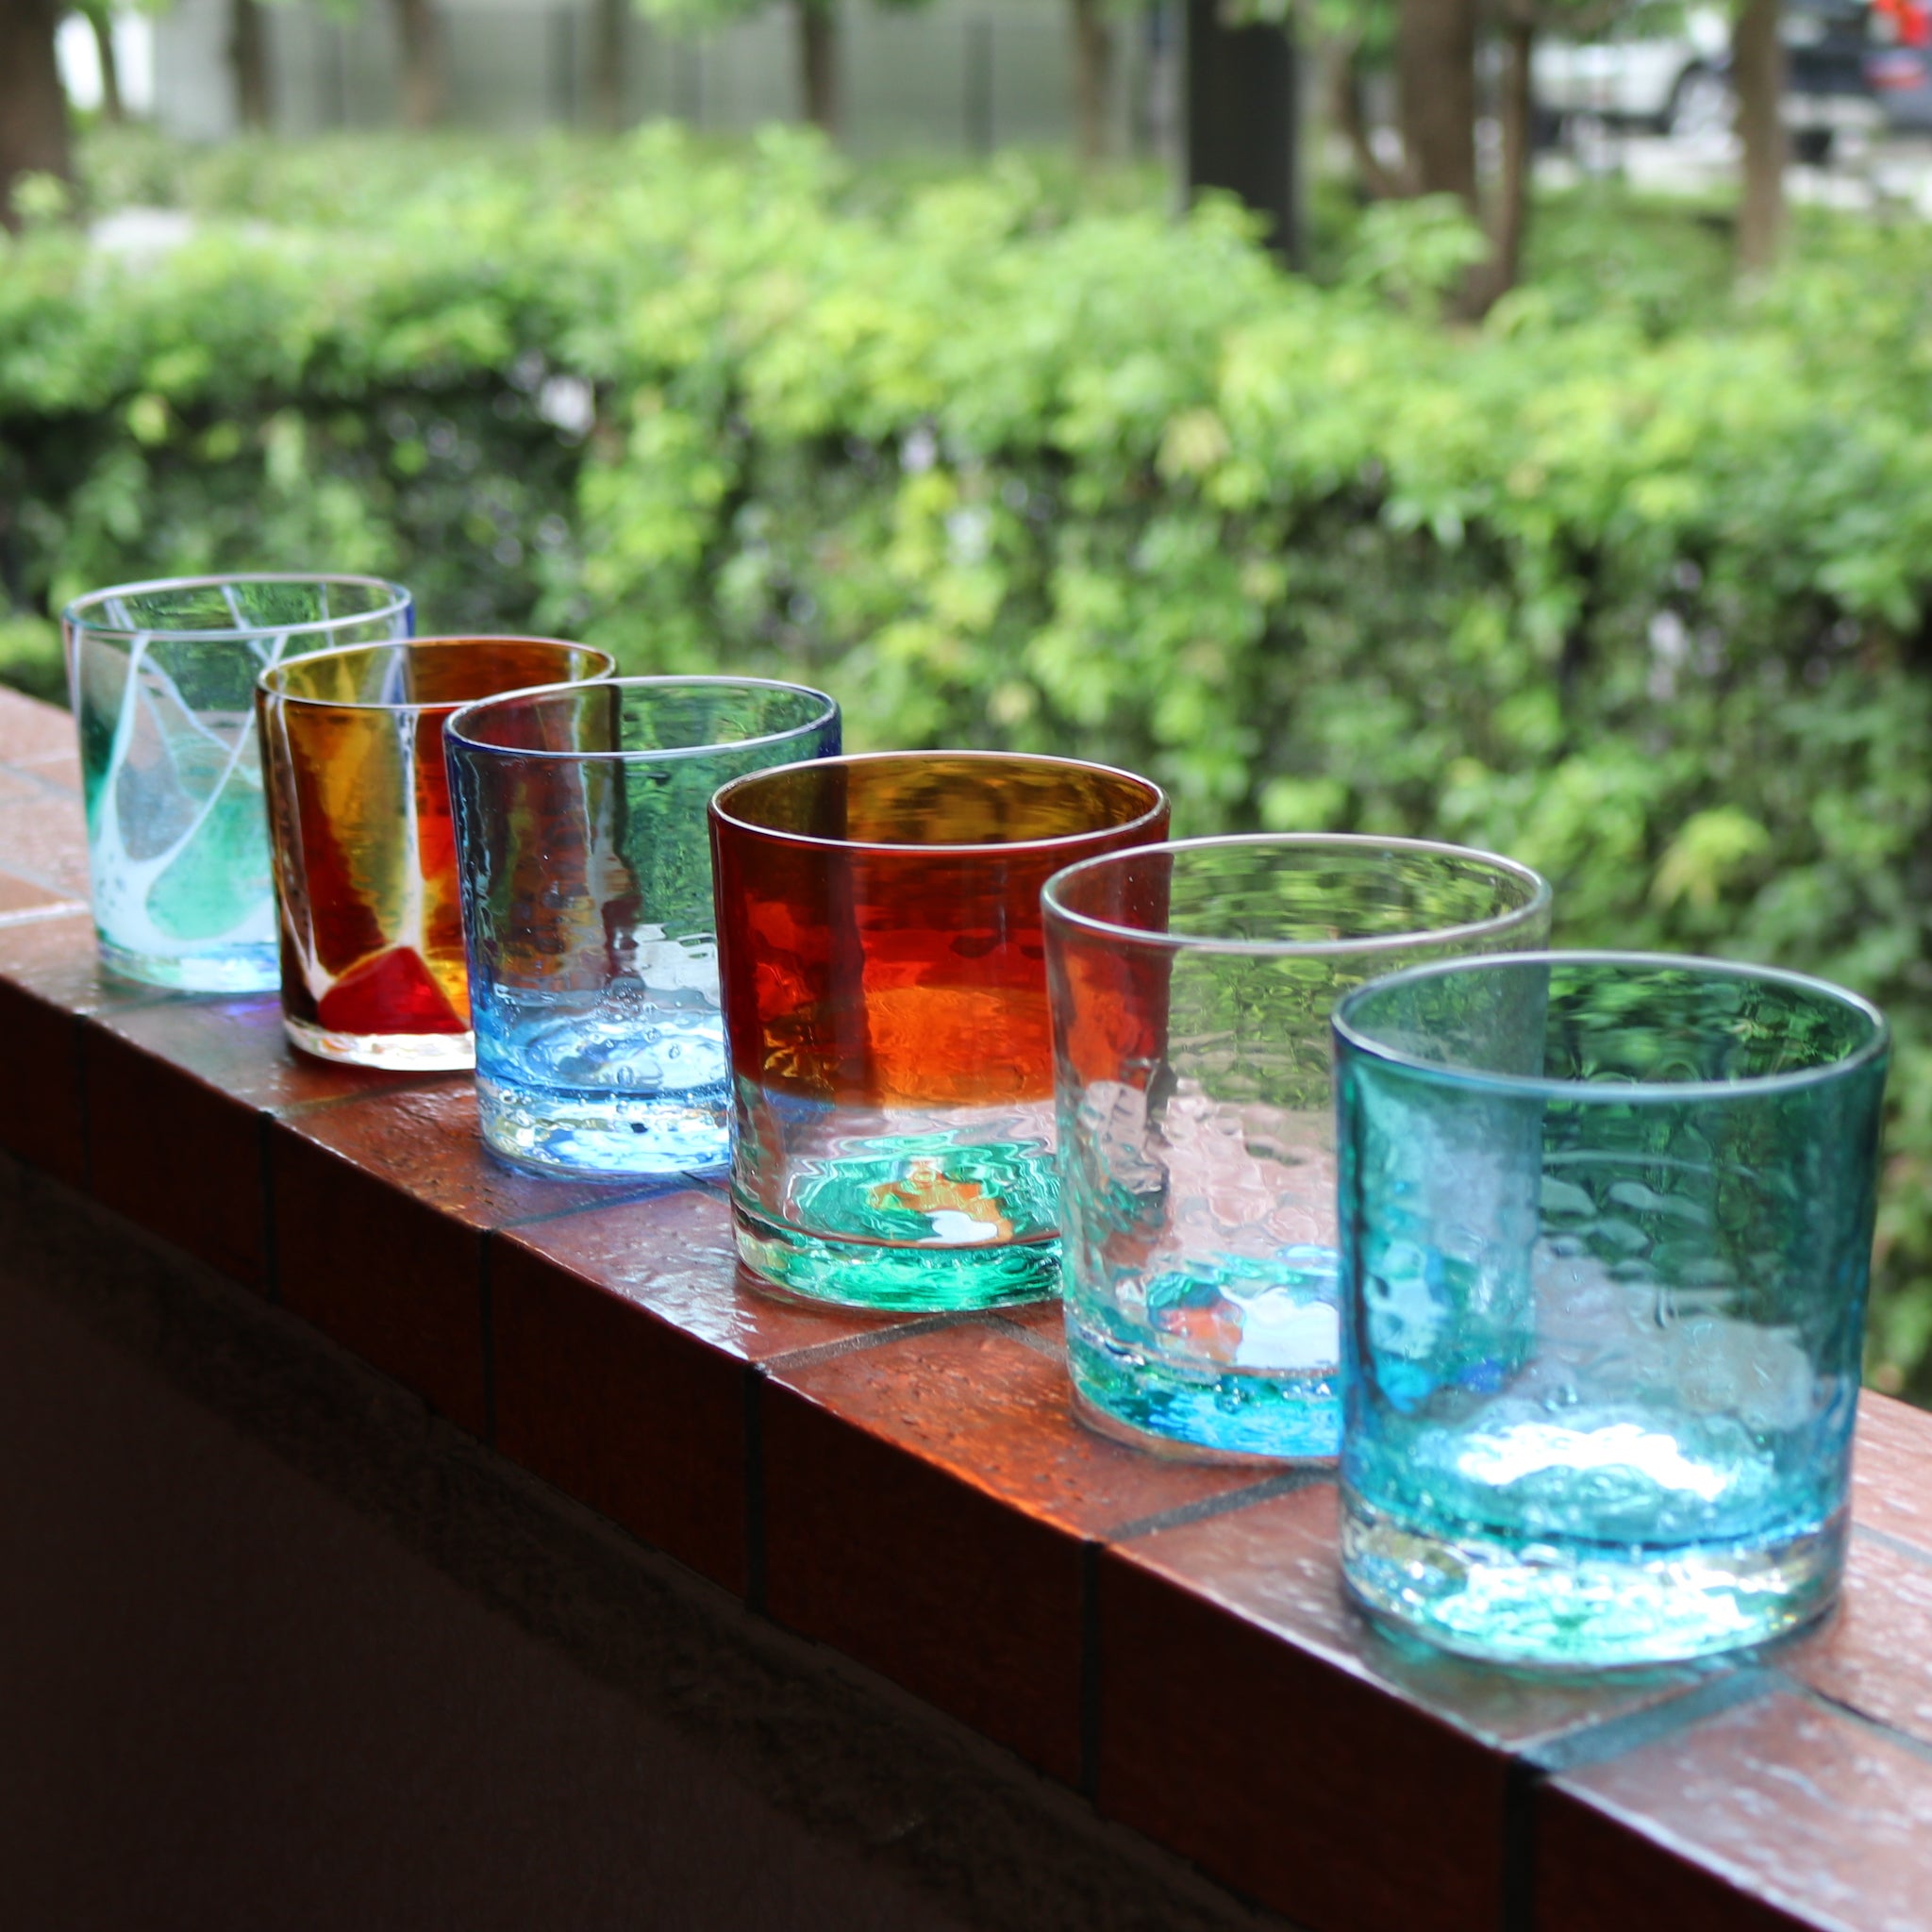 琉球ガラス | オーシャンロックグラス | ブルー